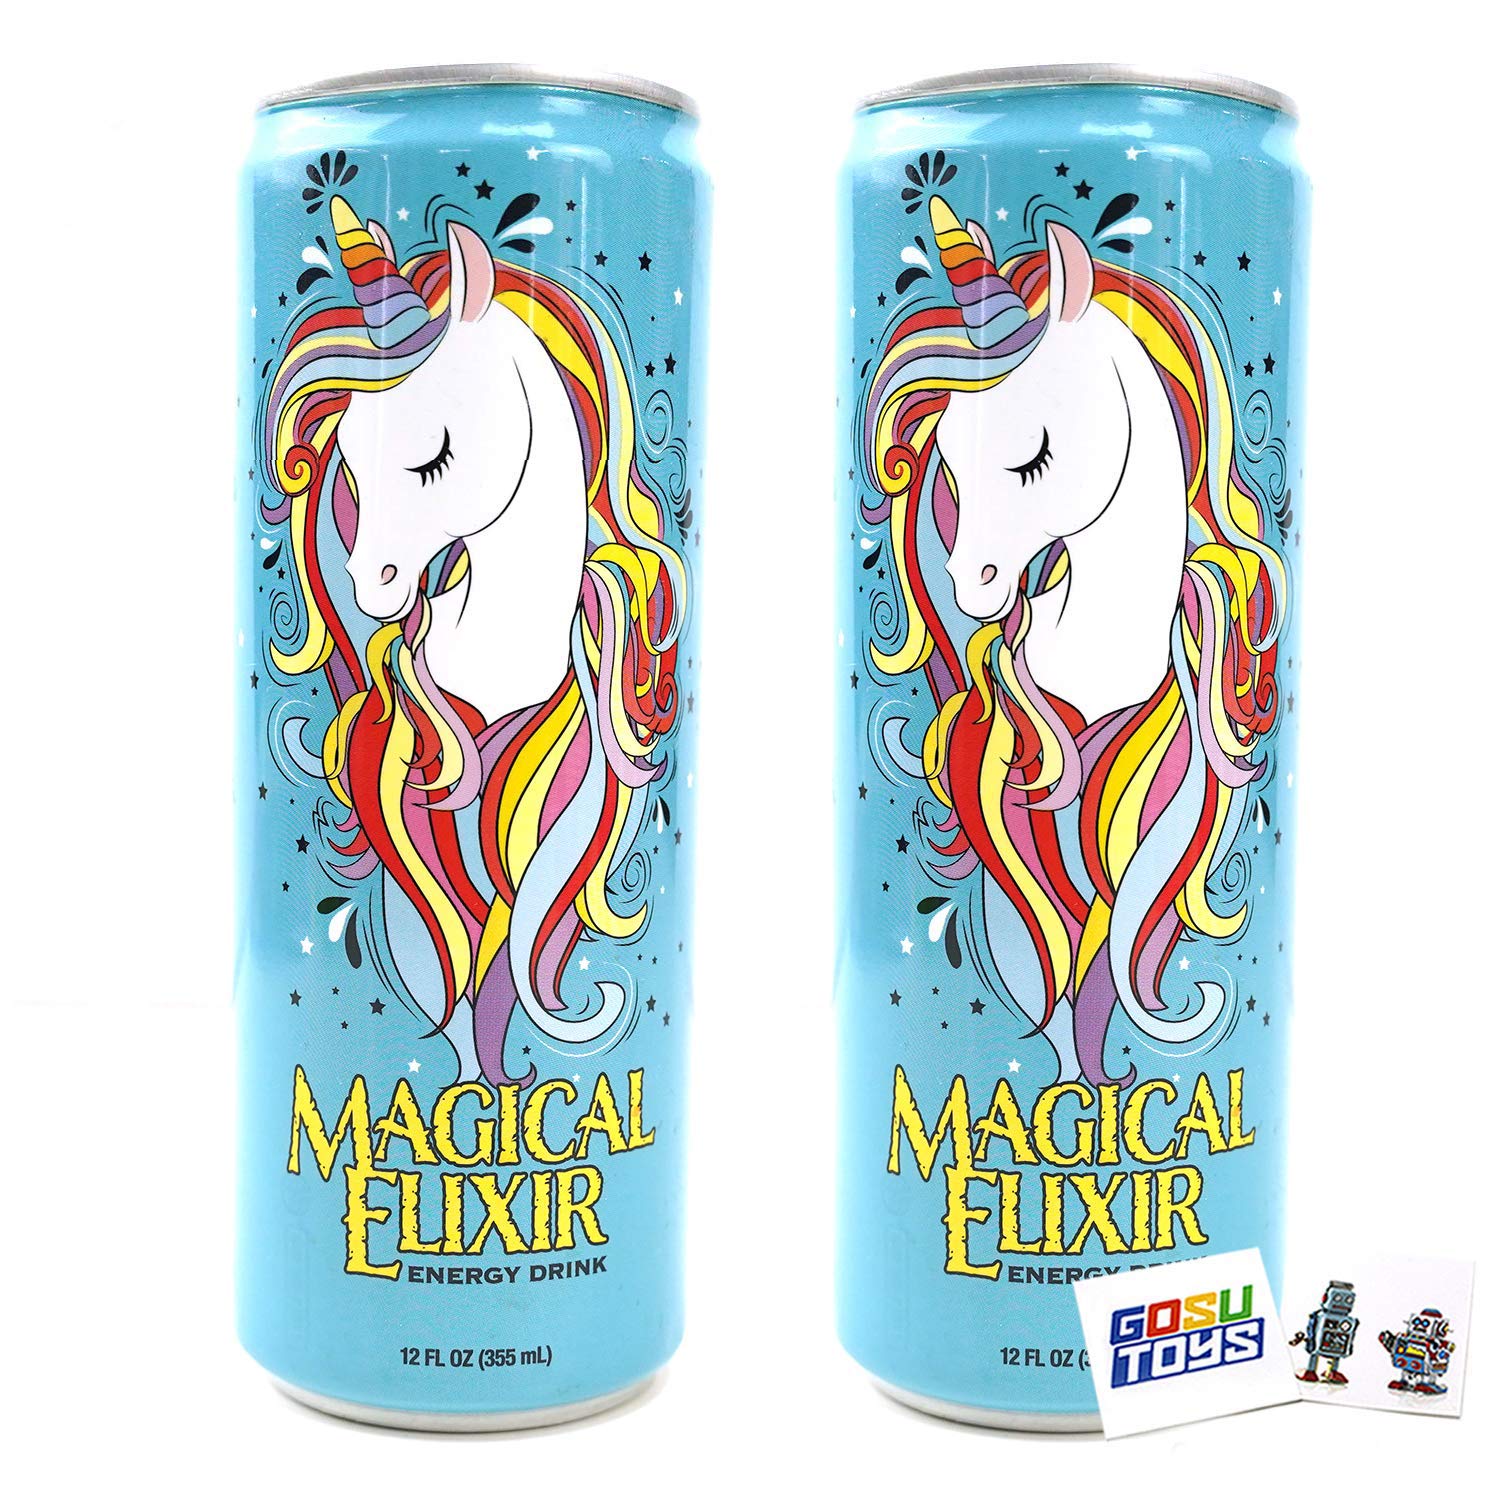 Magical elixir unicorn